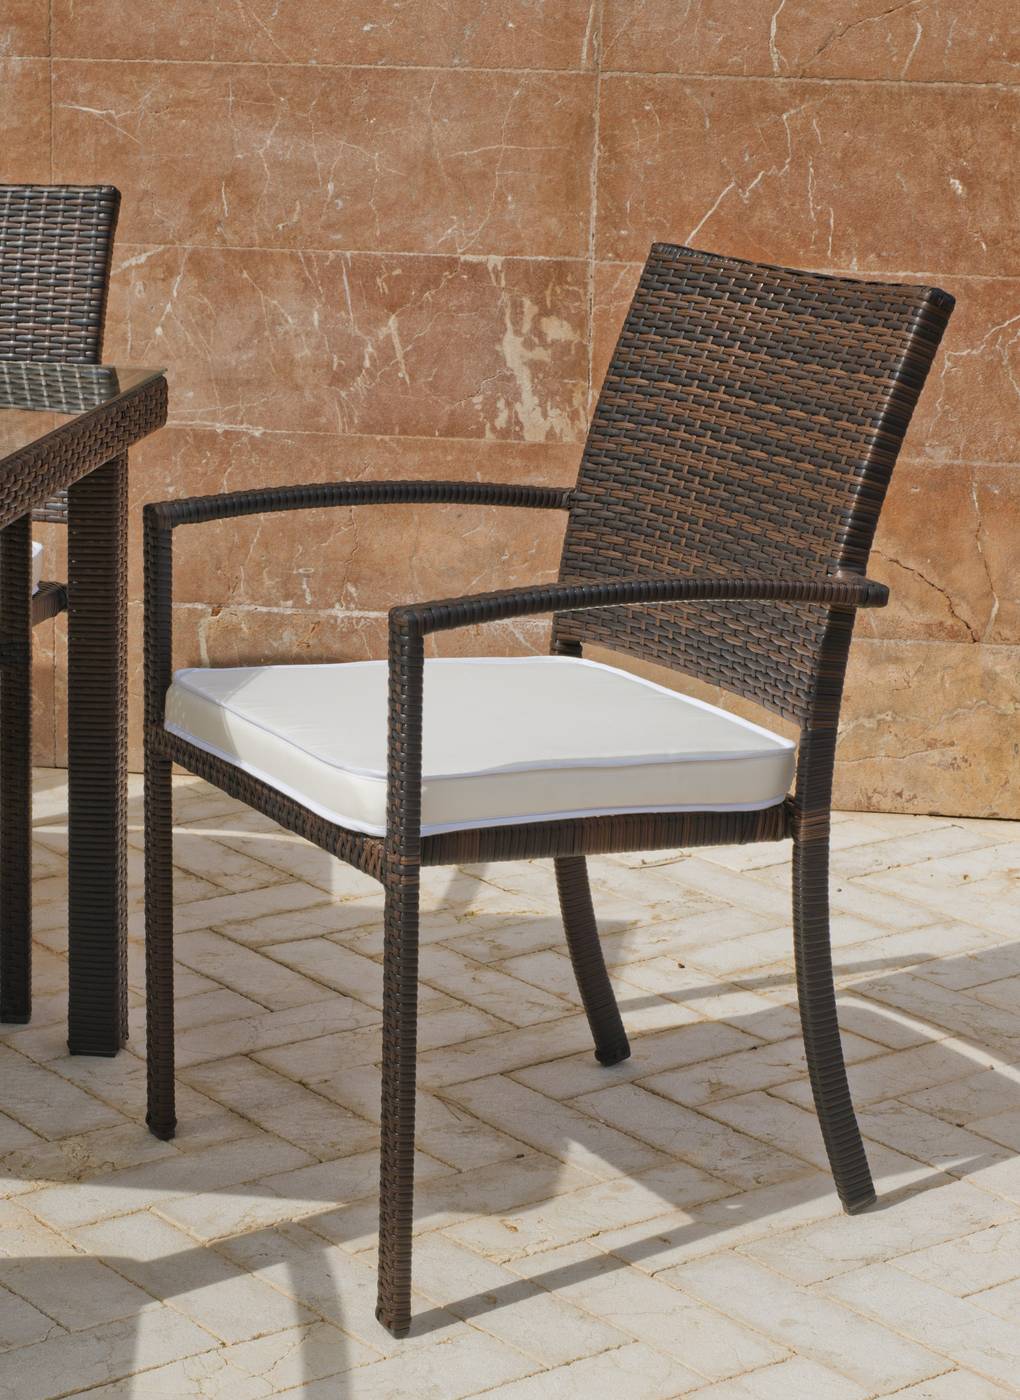 Conjunto Mosaico Sambala150-Bahia - Conjunto de forja color marrón: mesa con tablero mosaico ovalado de 150 cm + 4 sillones de ratán con cojines.